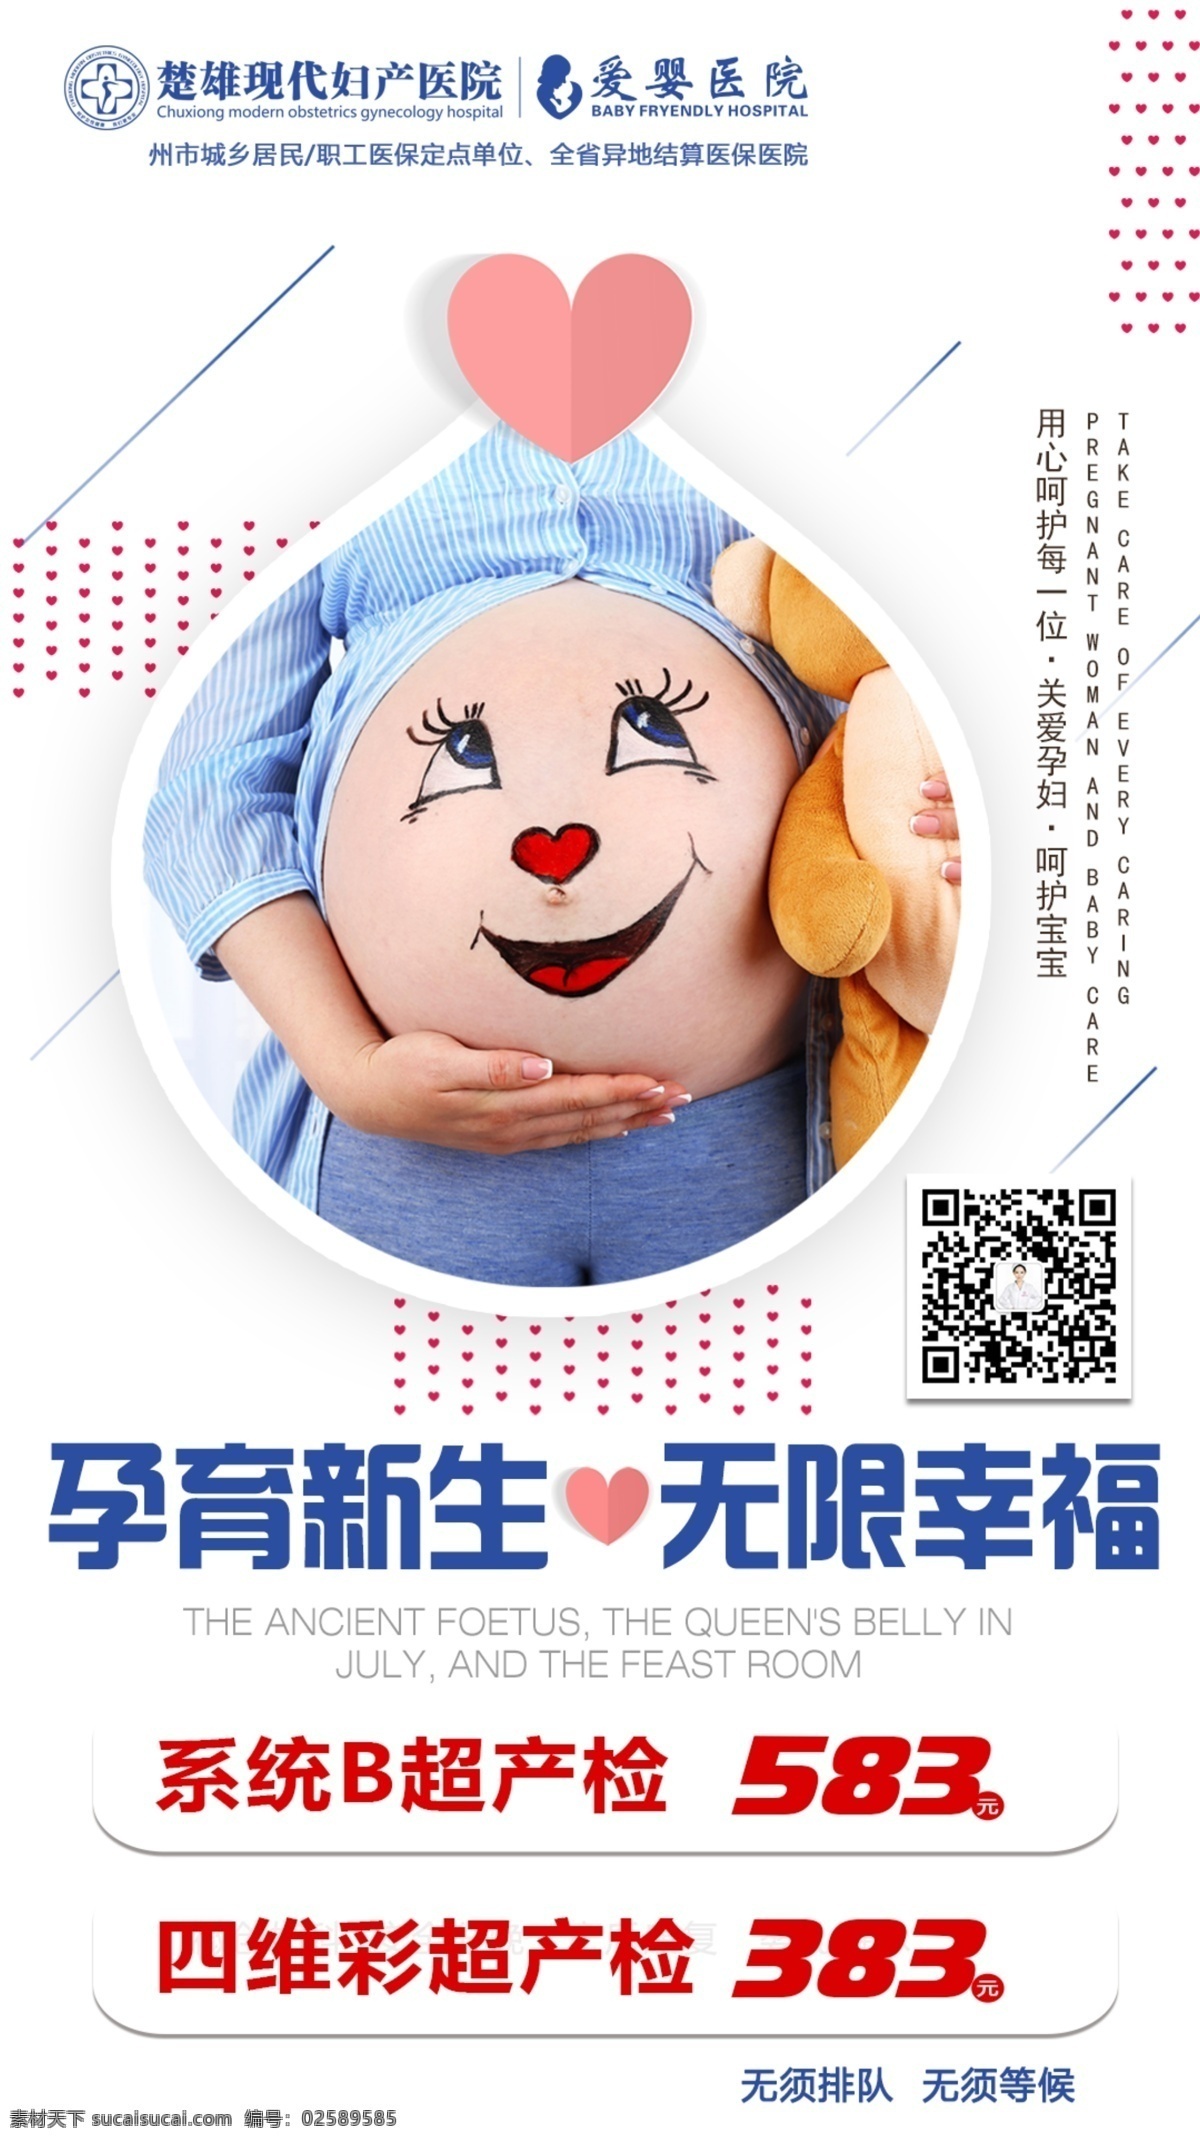 孕妇产检 孕妈 月子中心图片 月子中心 卡通孕妇 妇产医院 医院妇科